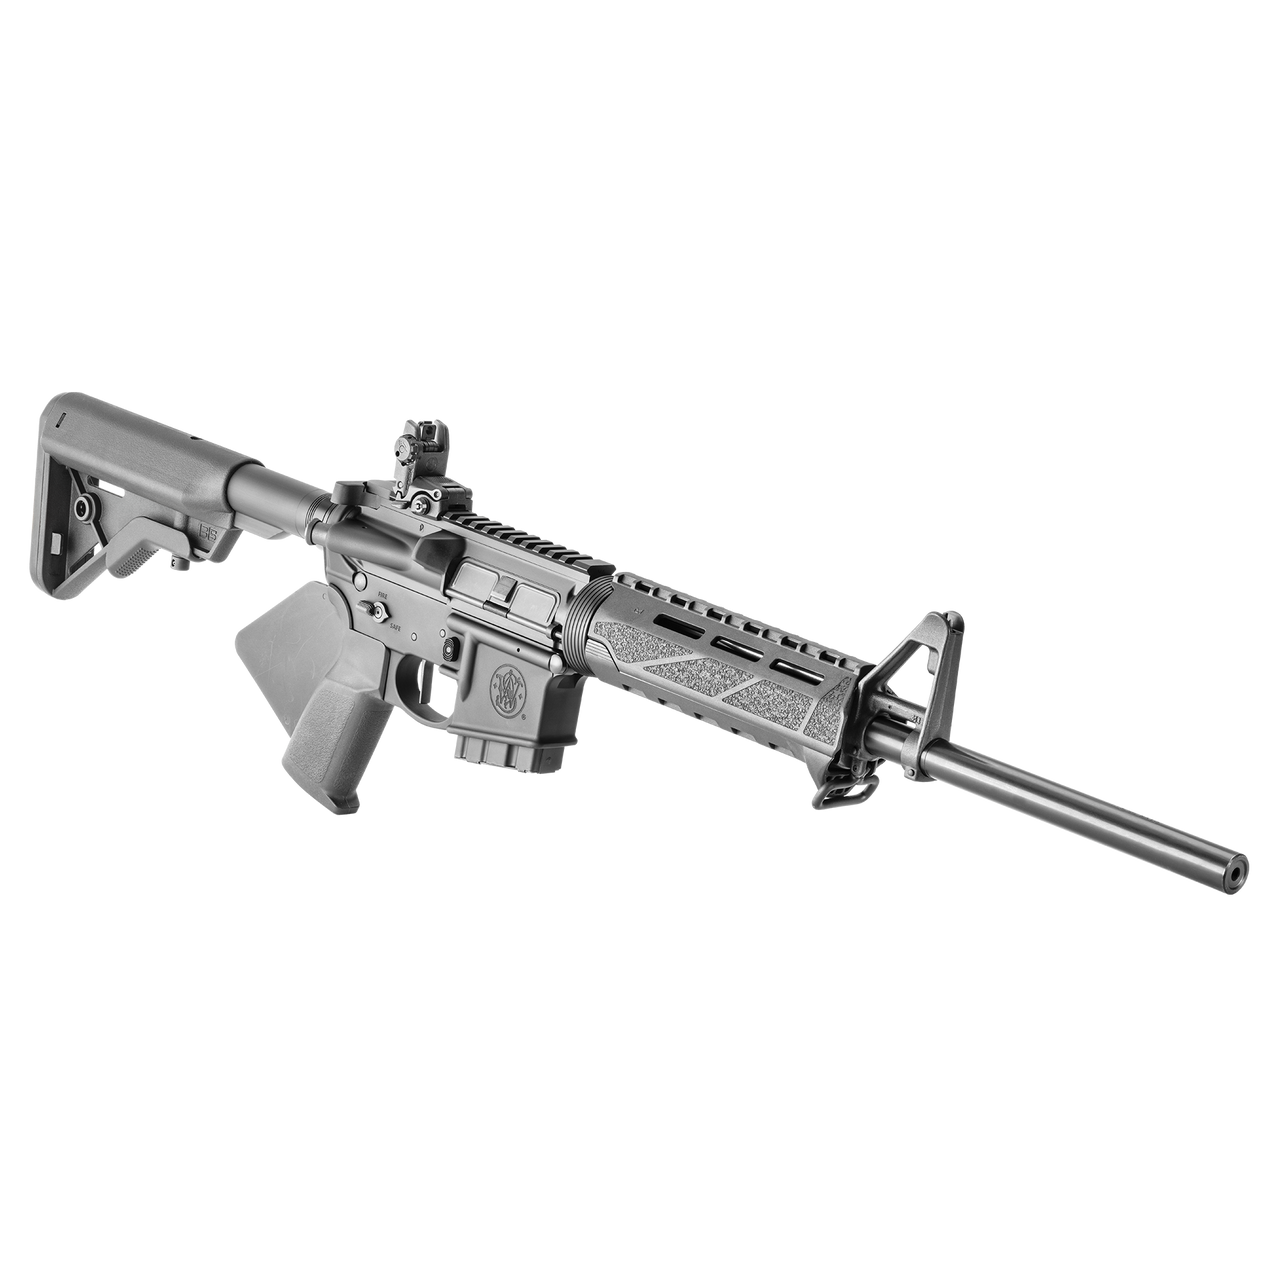 Buy Smith & Wesson Volunteer XV Compliant CA Long Gun Online